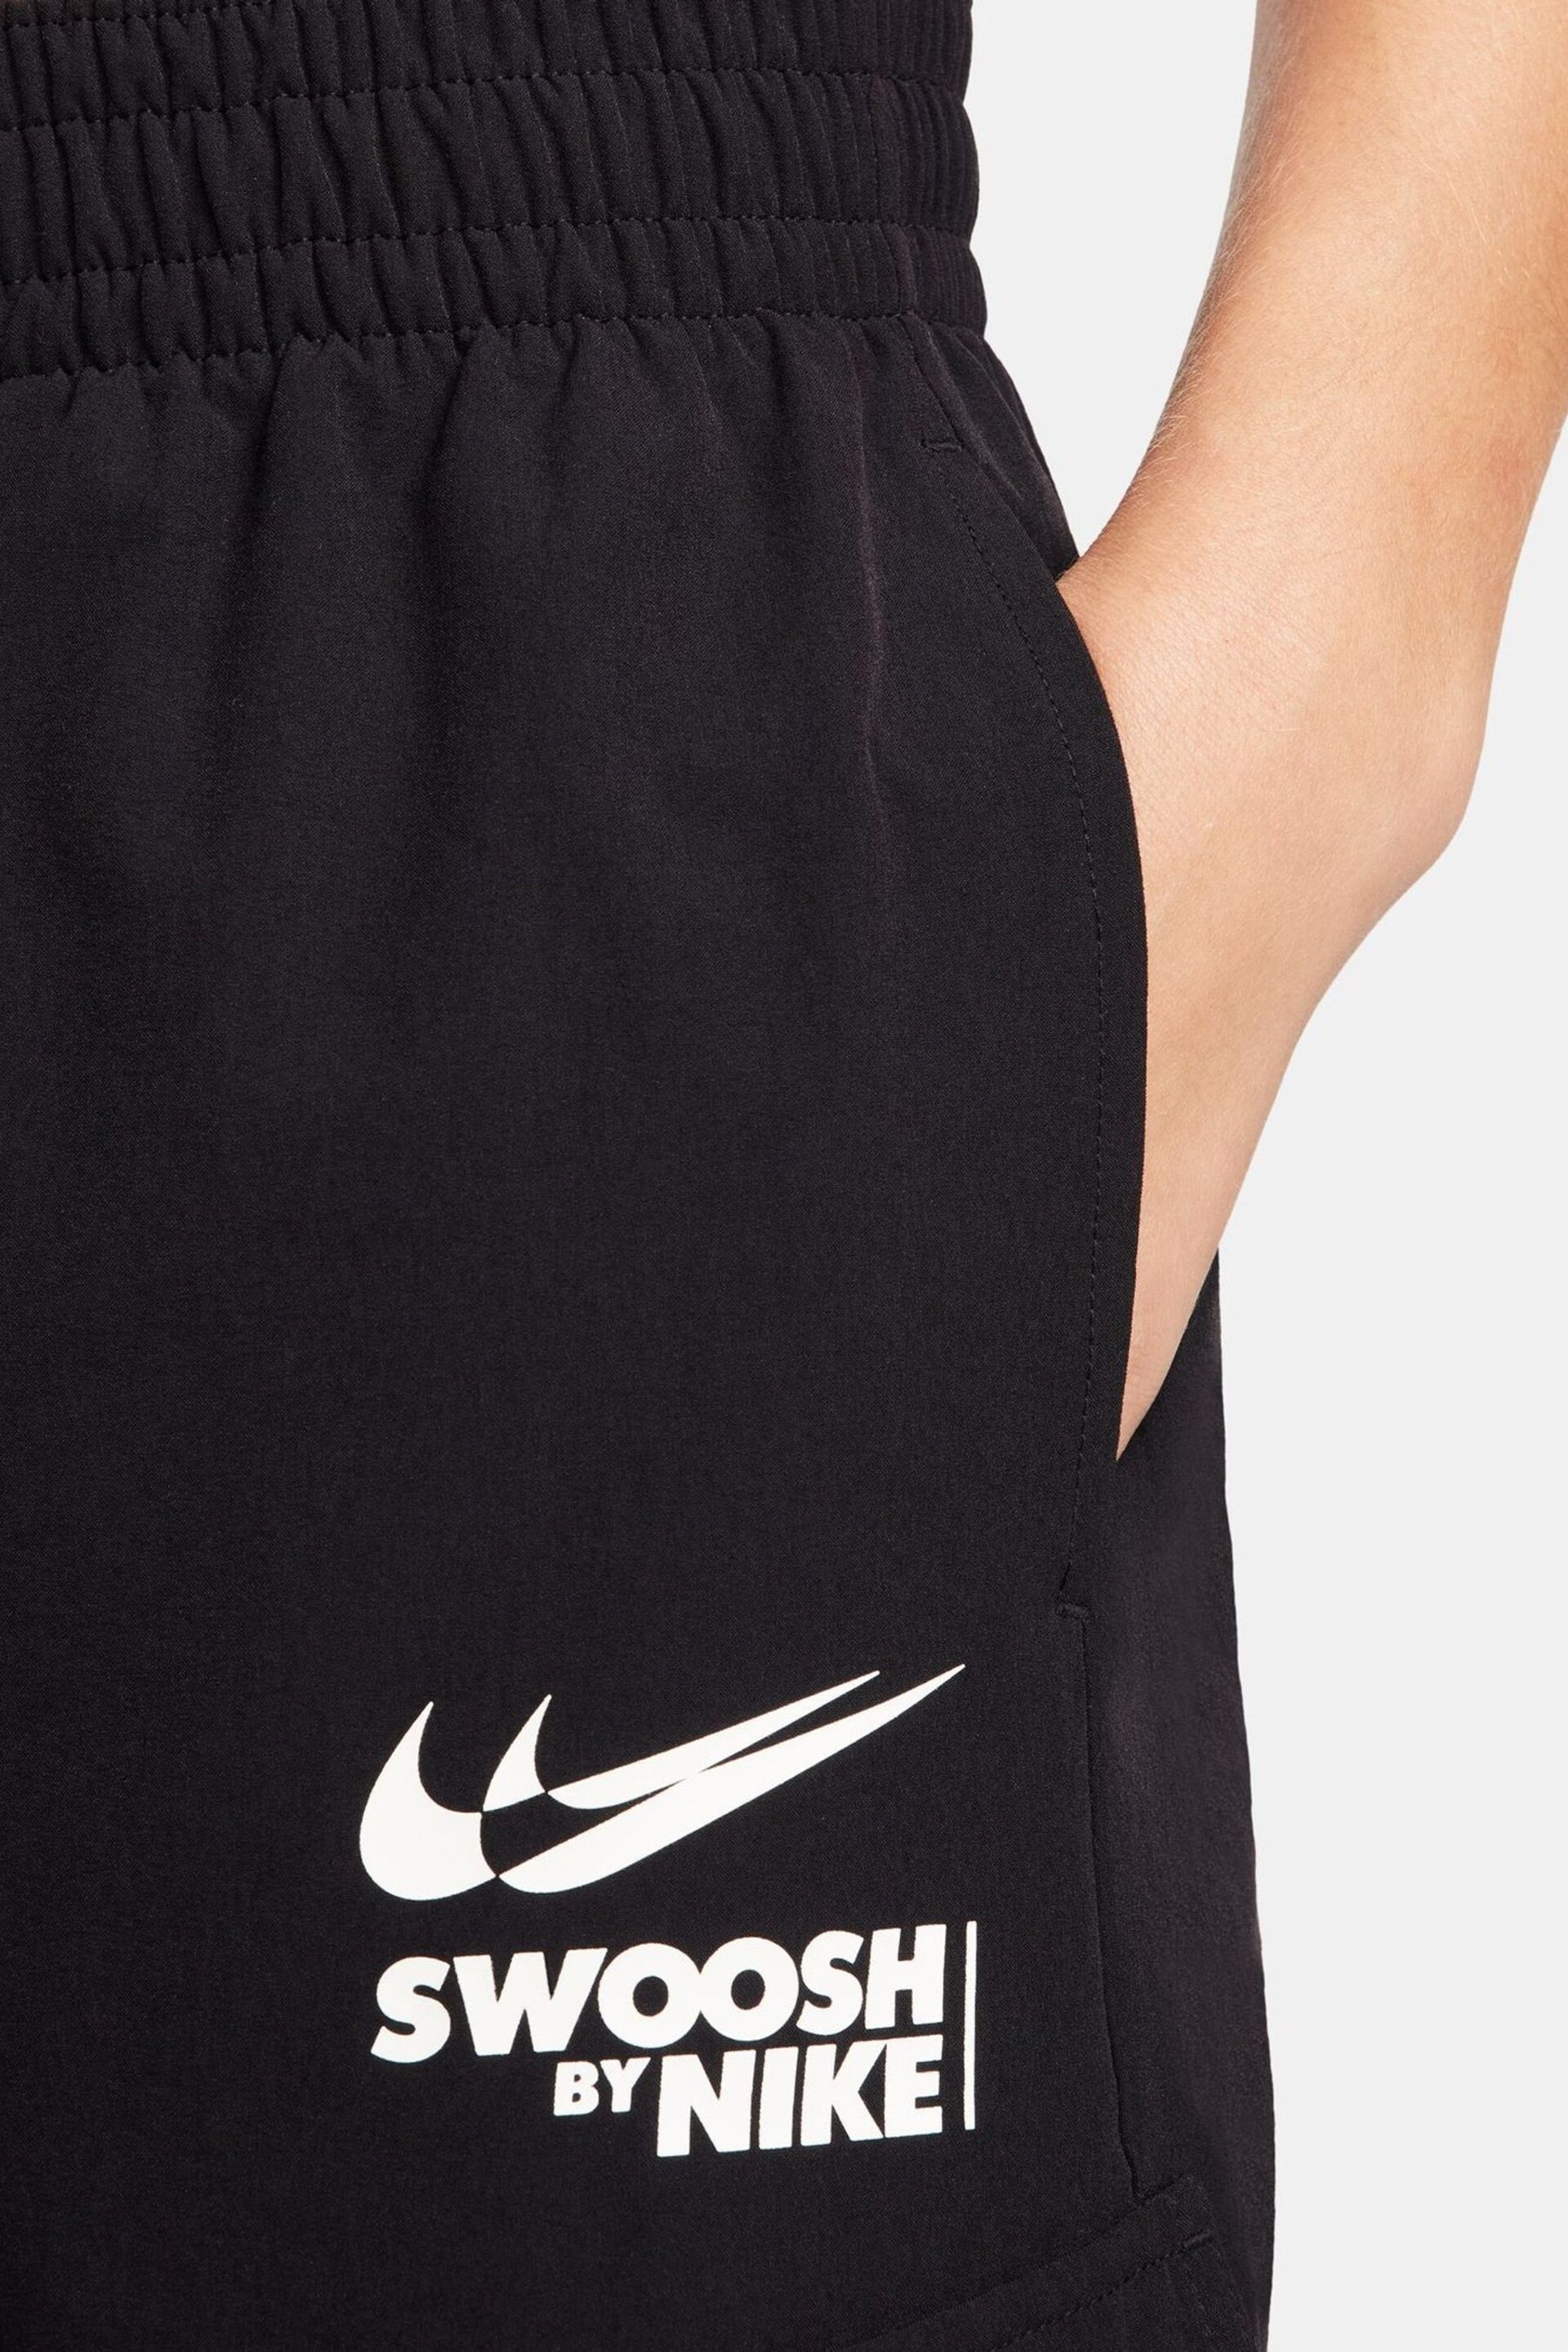 Nike Black Swoosh Logo Cargo Joggers - Image 4 of 8